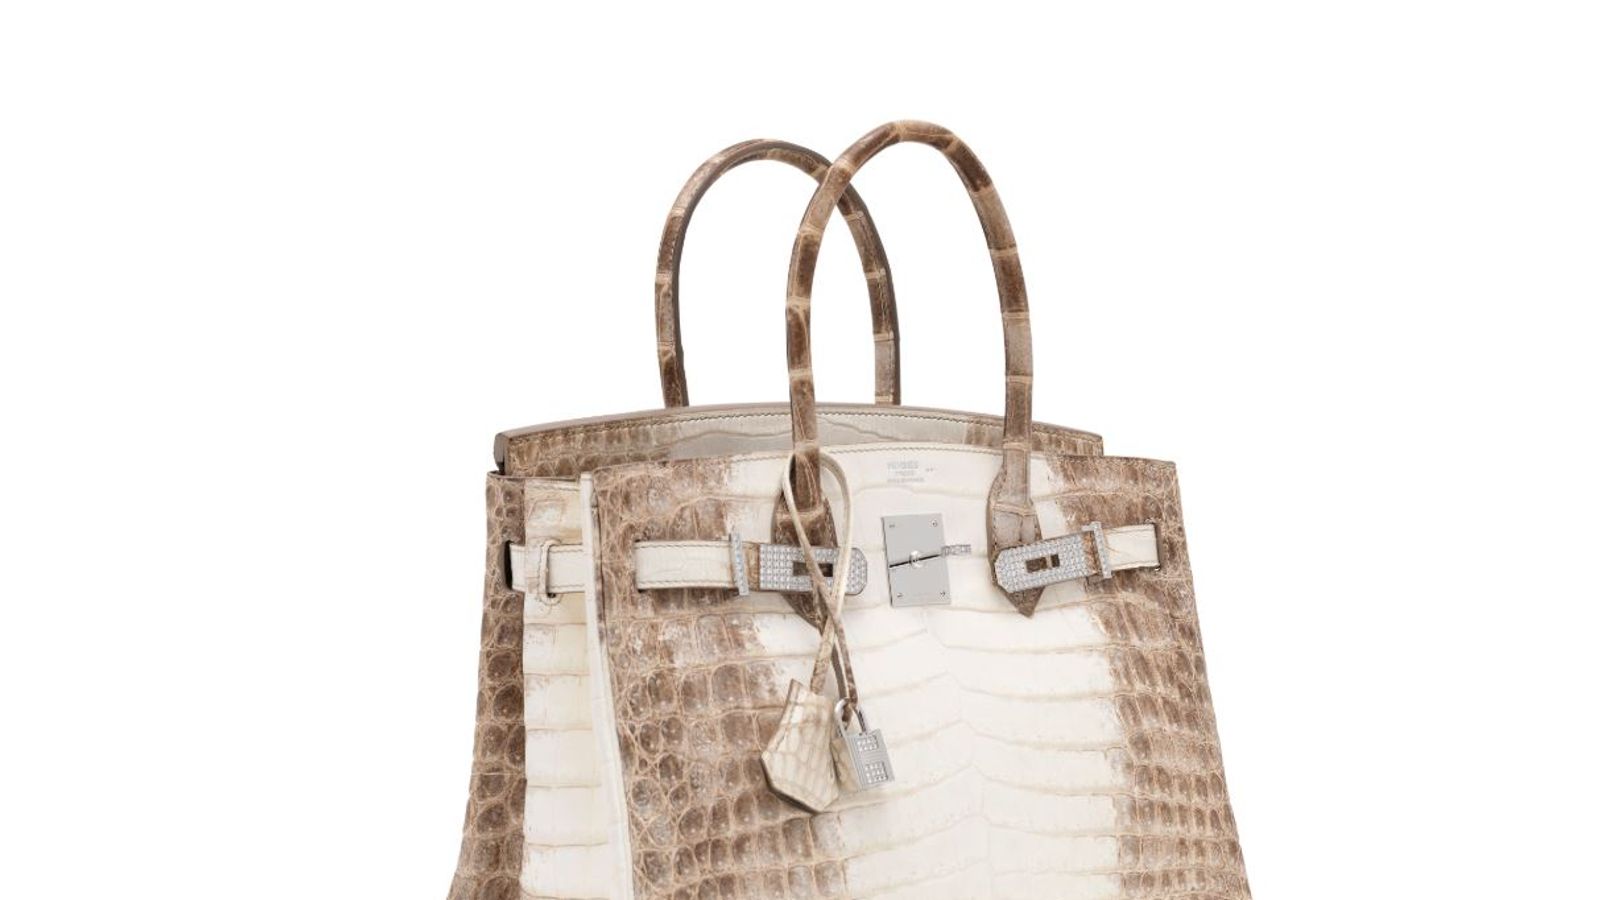 The most expensive handbag ever sold - the Diamond Hermes handbag